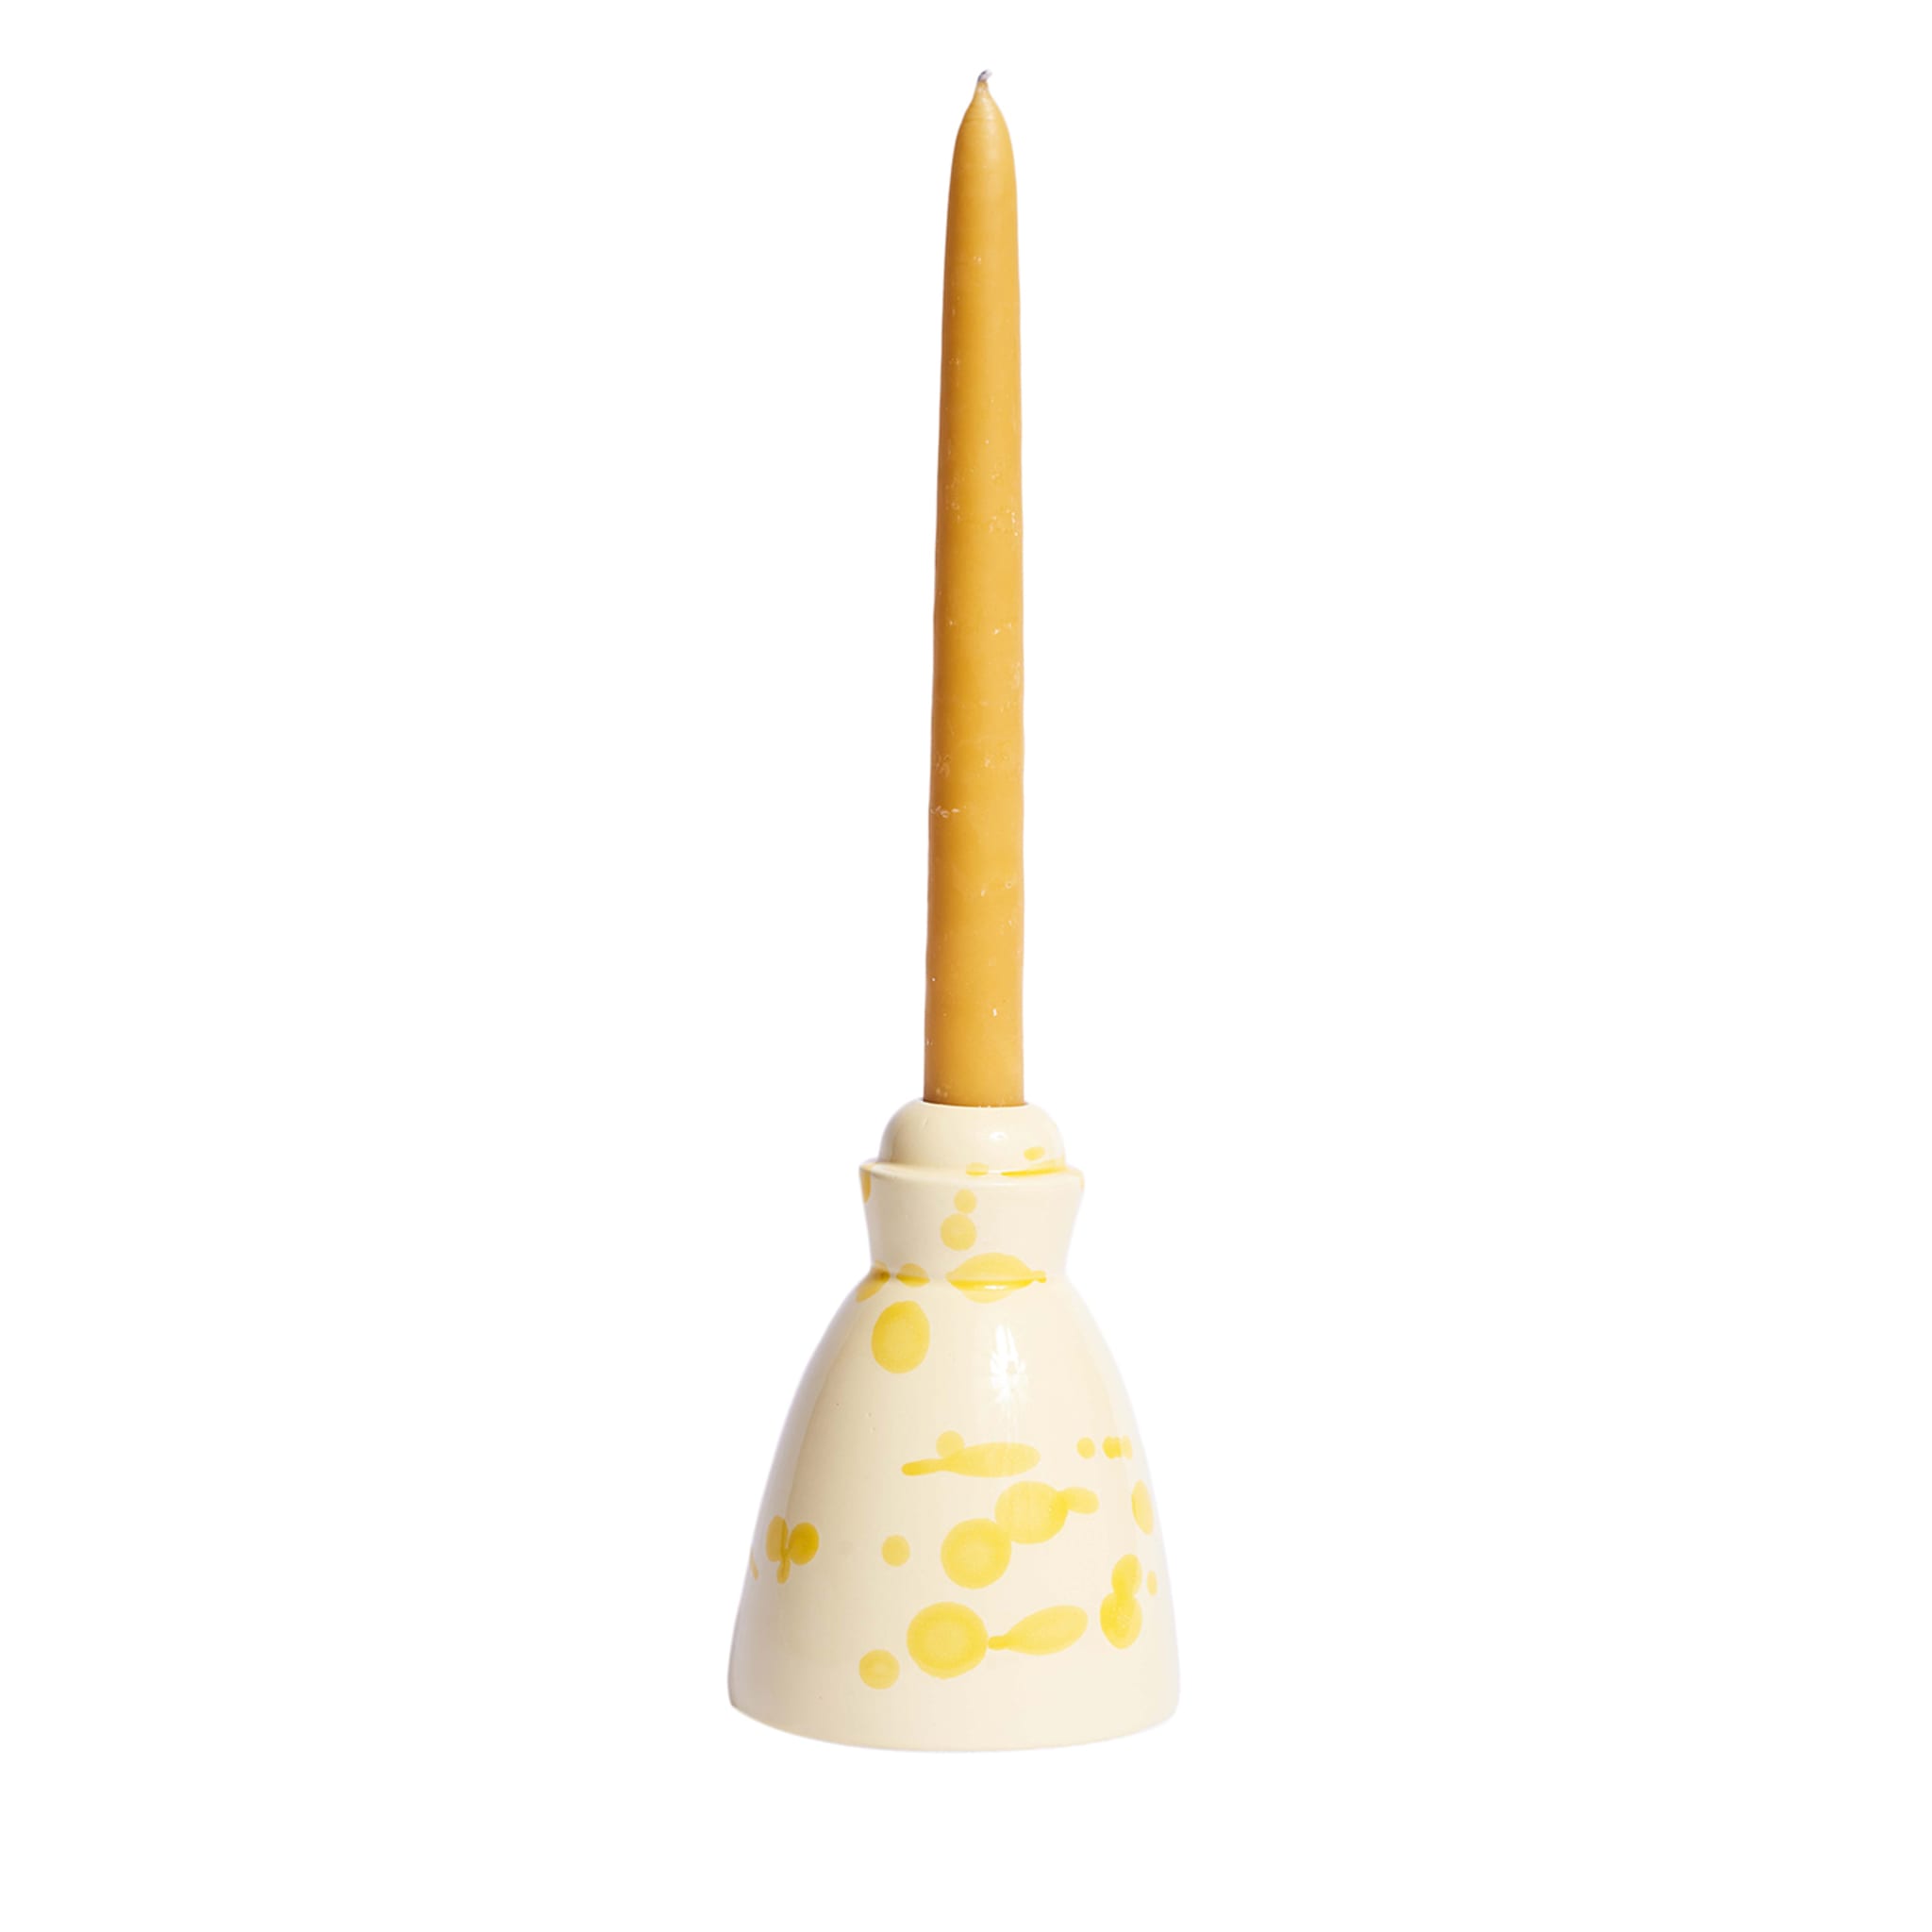 Gelber Keramik-Kerzenleuchter mit 4 Bienenwachskerzen - Hauptansicht